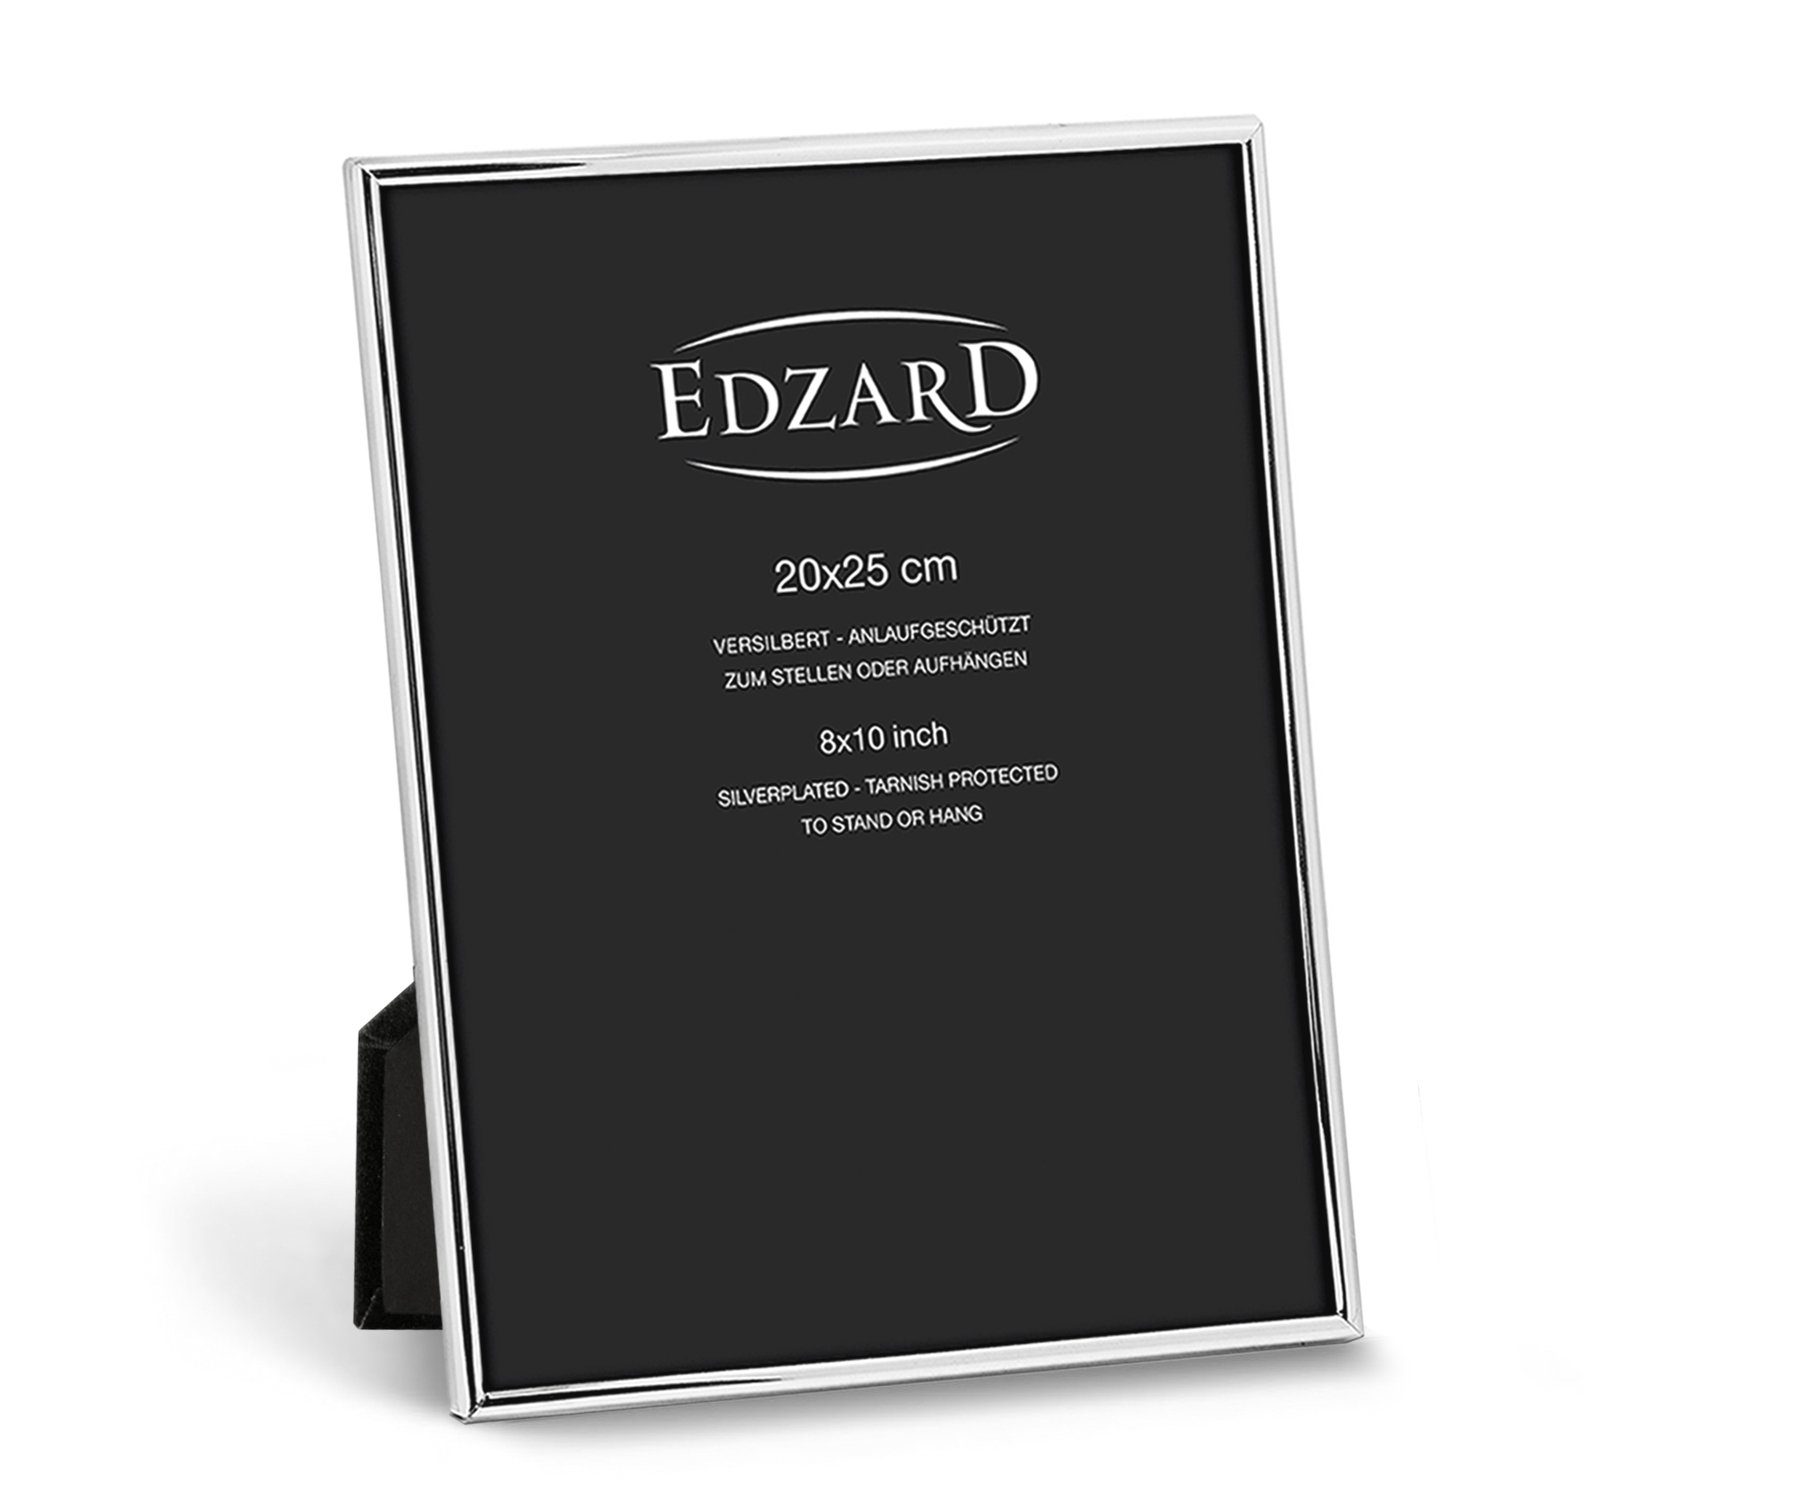 Sehr beliebter Online-Verkauf! EDZARD Bilderrahmen Genua, für und - versilbert cm 20x25 edel Foto anlaufgeschützt